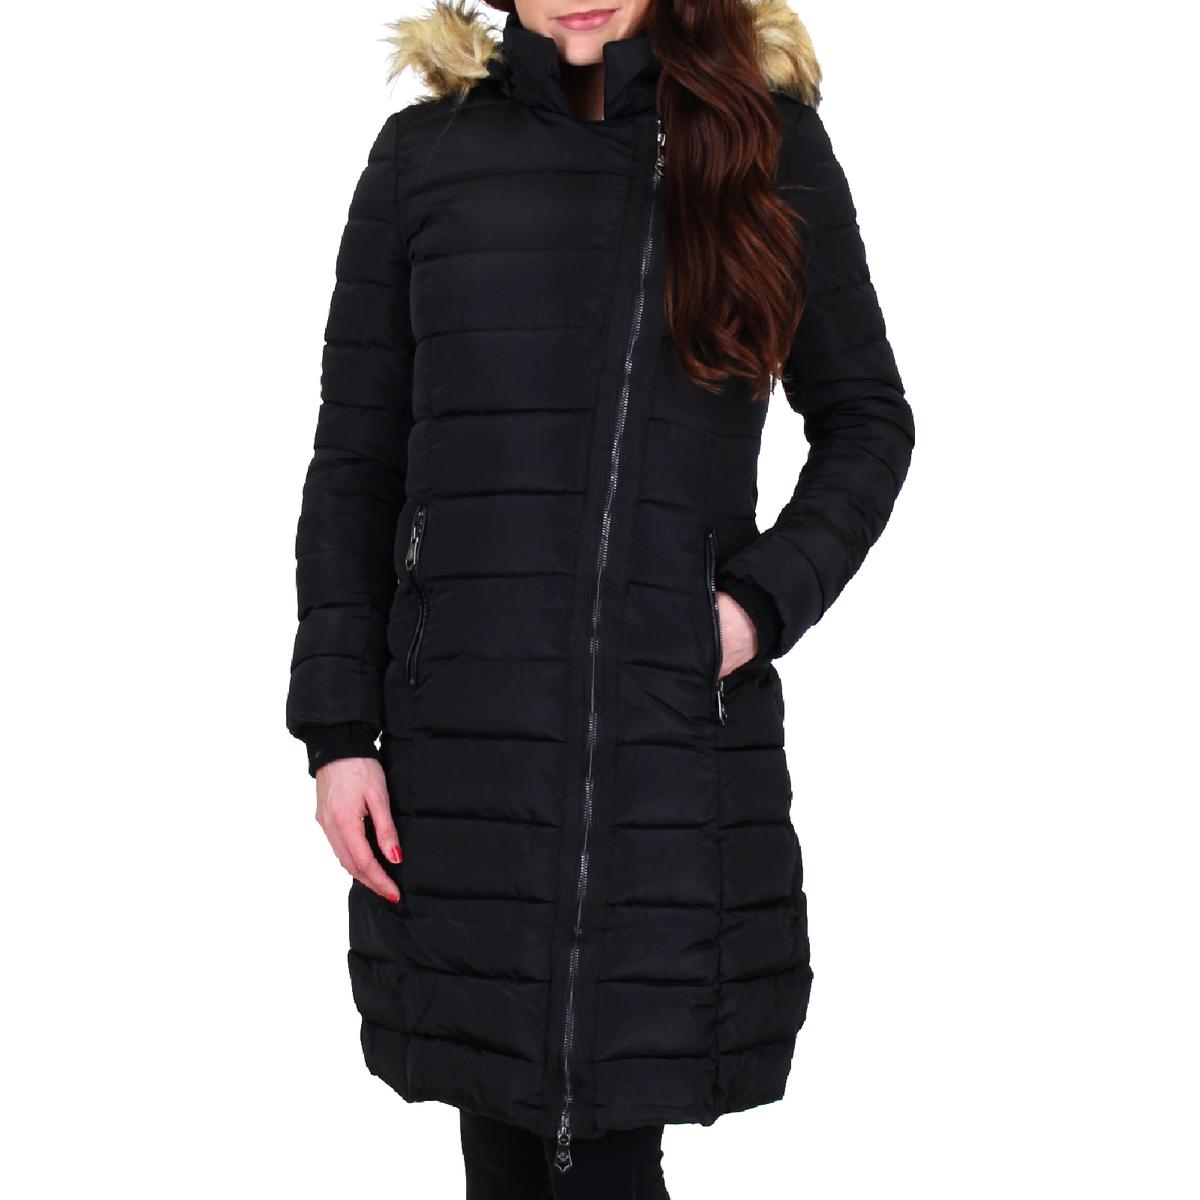 Nanette Nanette Lepore Womens Black Winter Puffer Coat Outerwear S BHFO ...